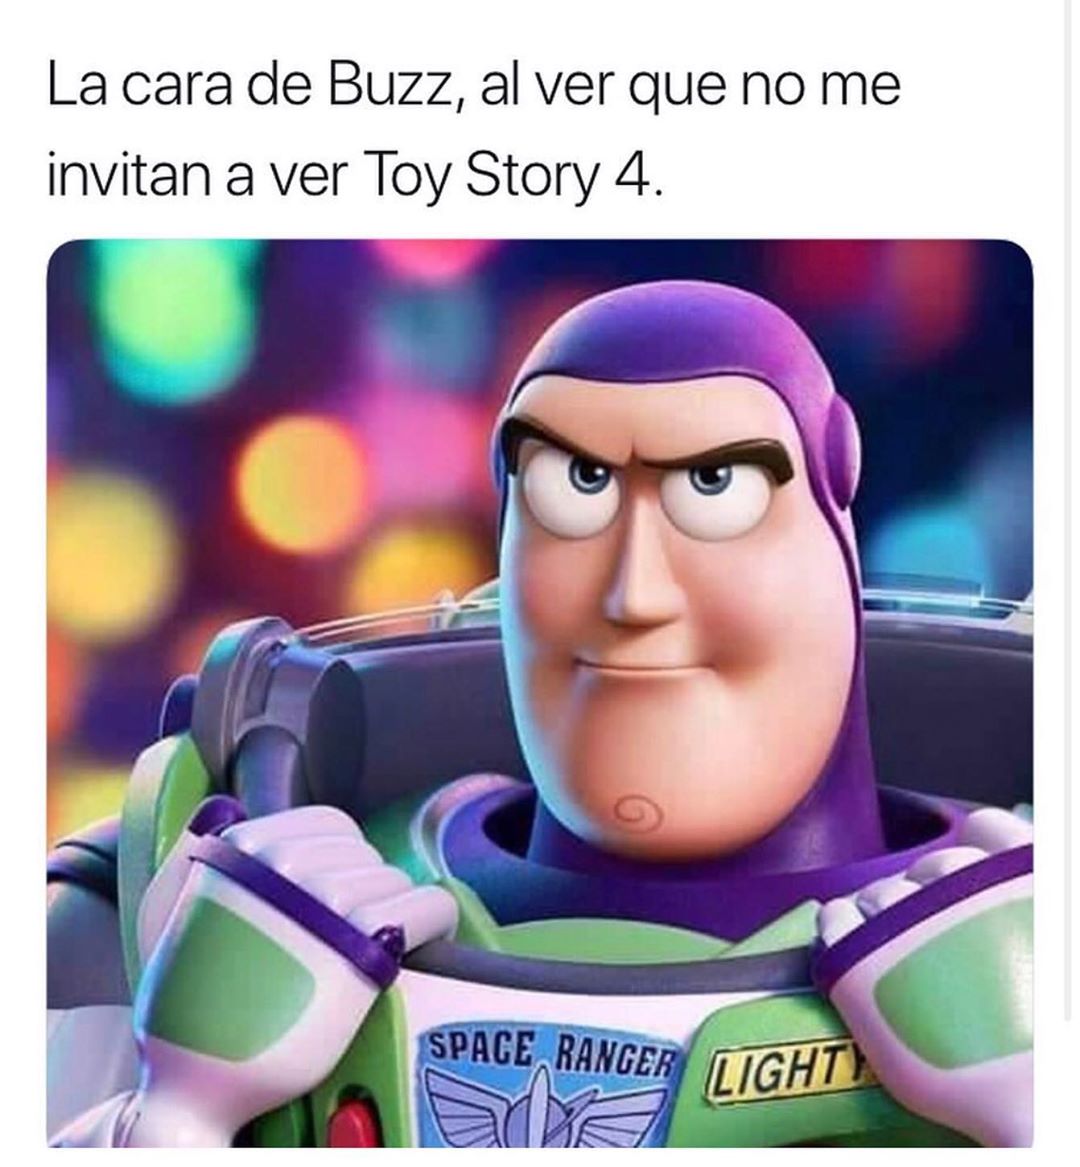 La cara de Buzz, al ver que no me invitan a ver Toy Story 4.